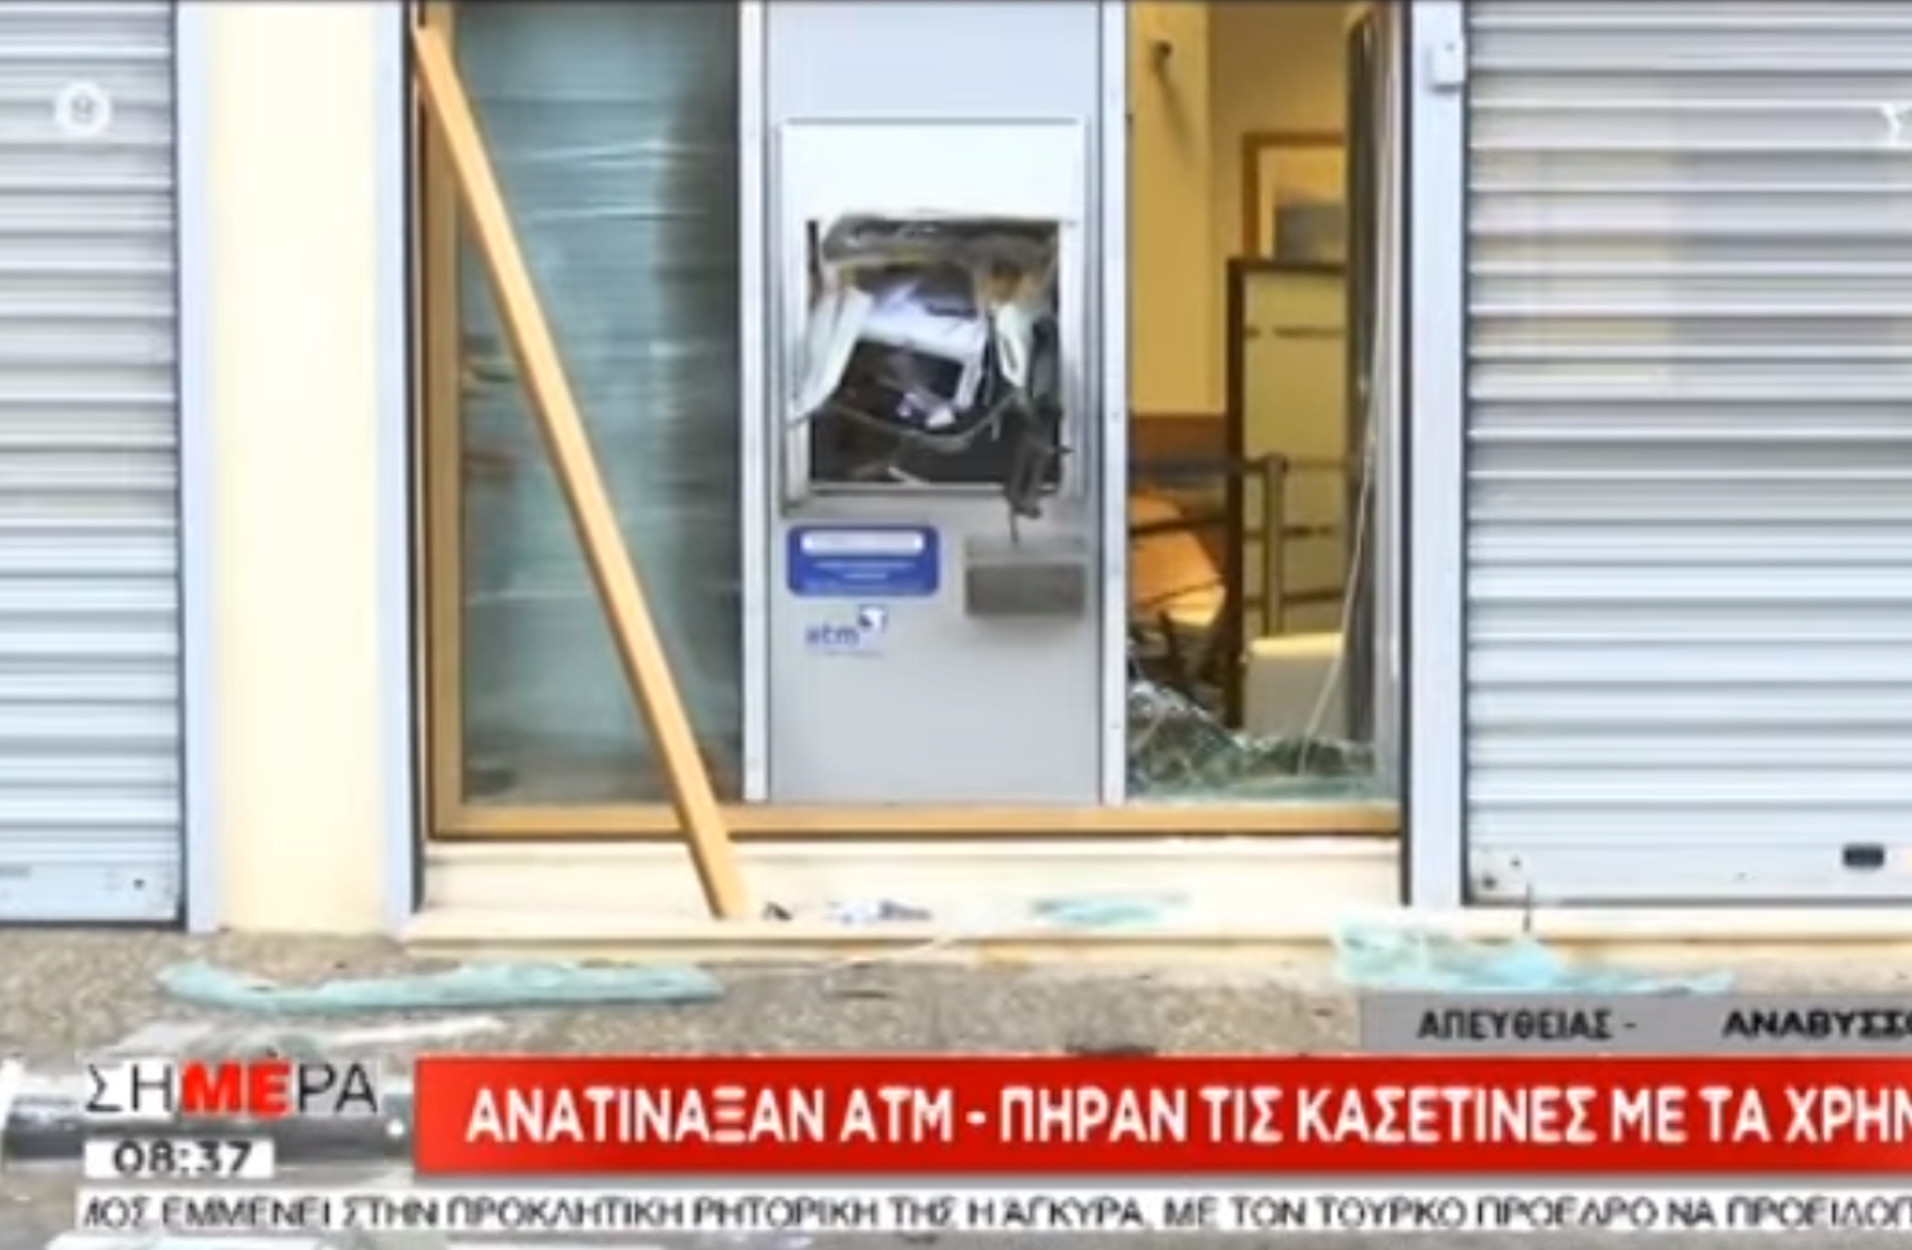 Ανατίναξη ATM στην Ανάβυσσο [video]